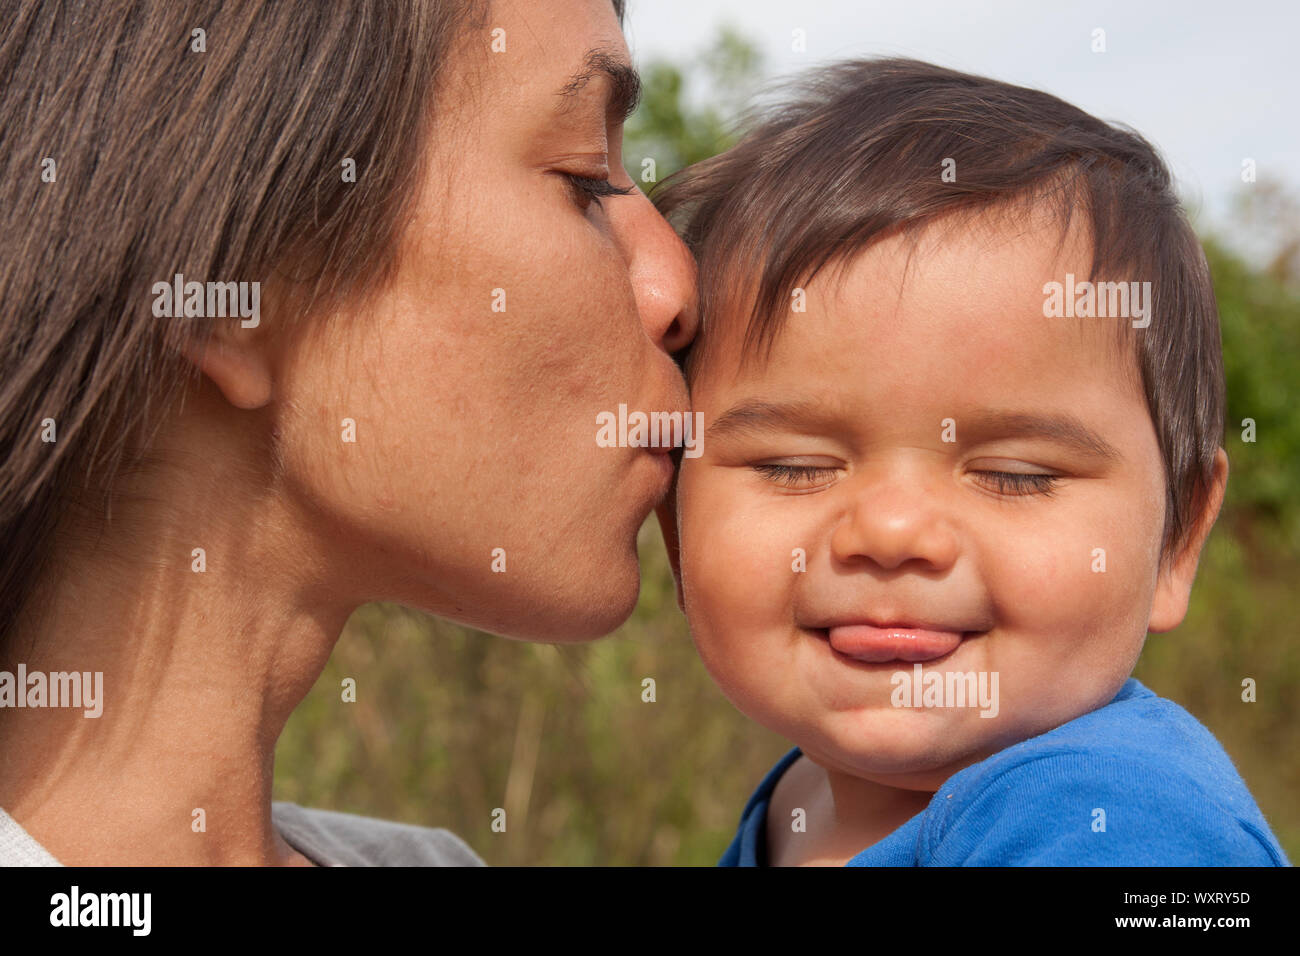 Madre Bebé besos en la mejilla Foto de stock